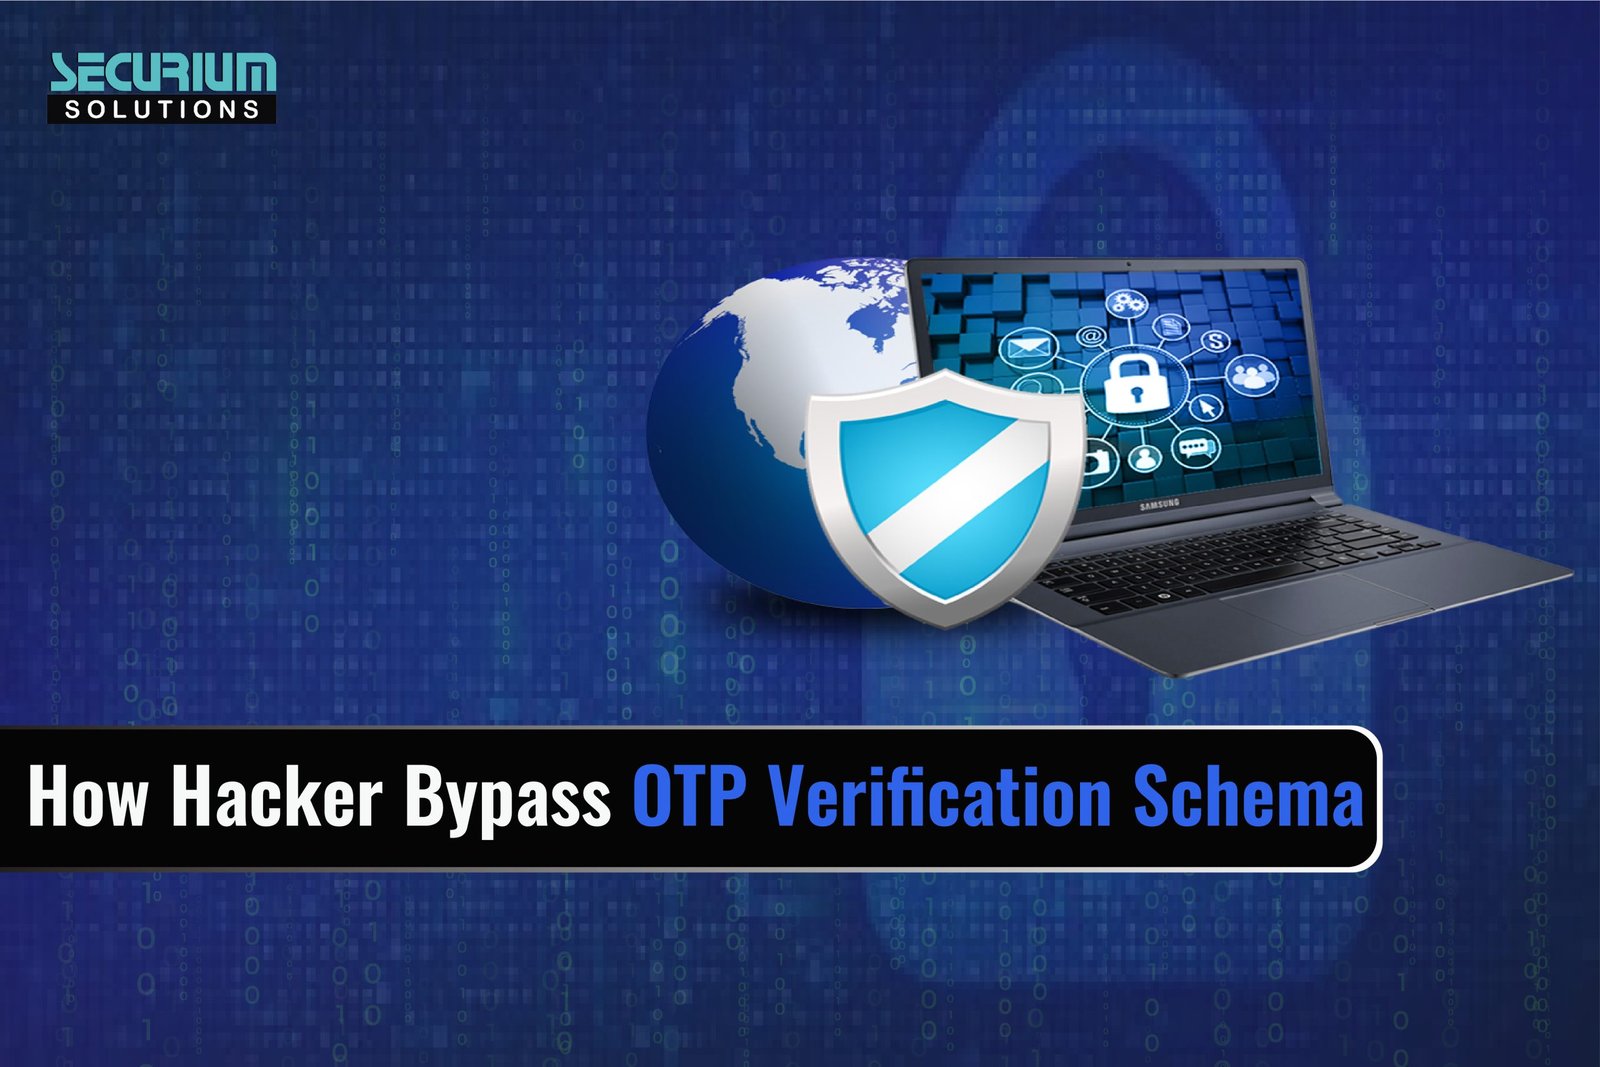 How Hacker Bypass OTP Verification Schema